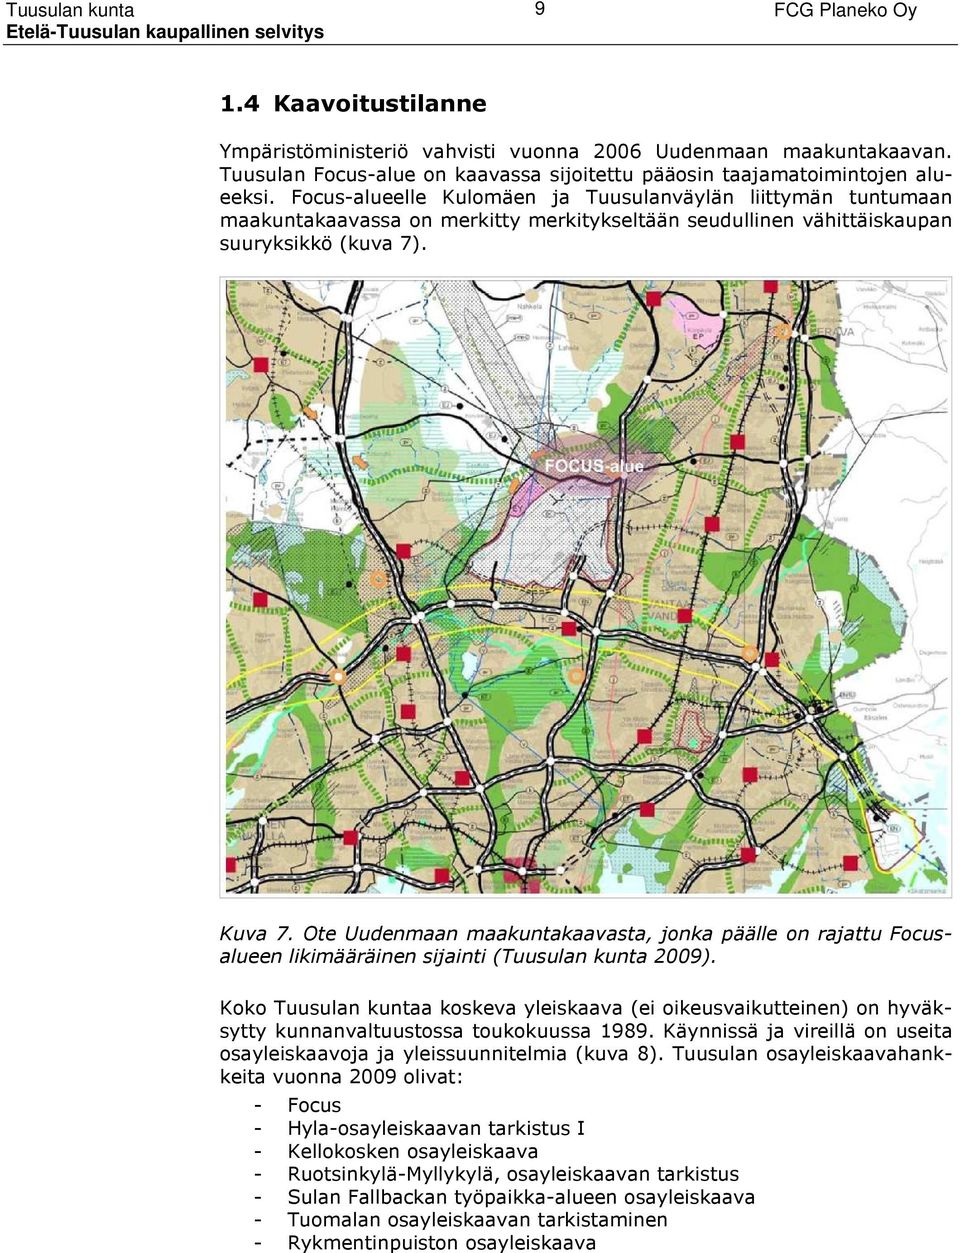 Ote Uudenmaan maakuntakaavasta, jonka päälle on rajattu Focusalueen likimääräinen sijainti (Tuusulan kunta 2009).